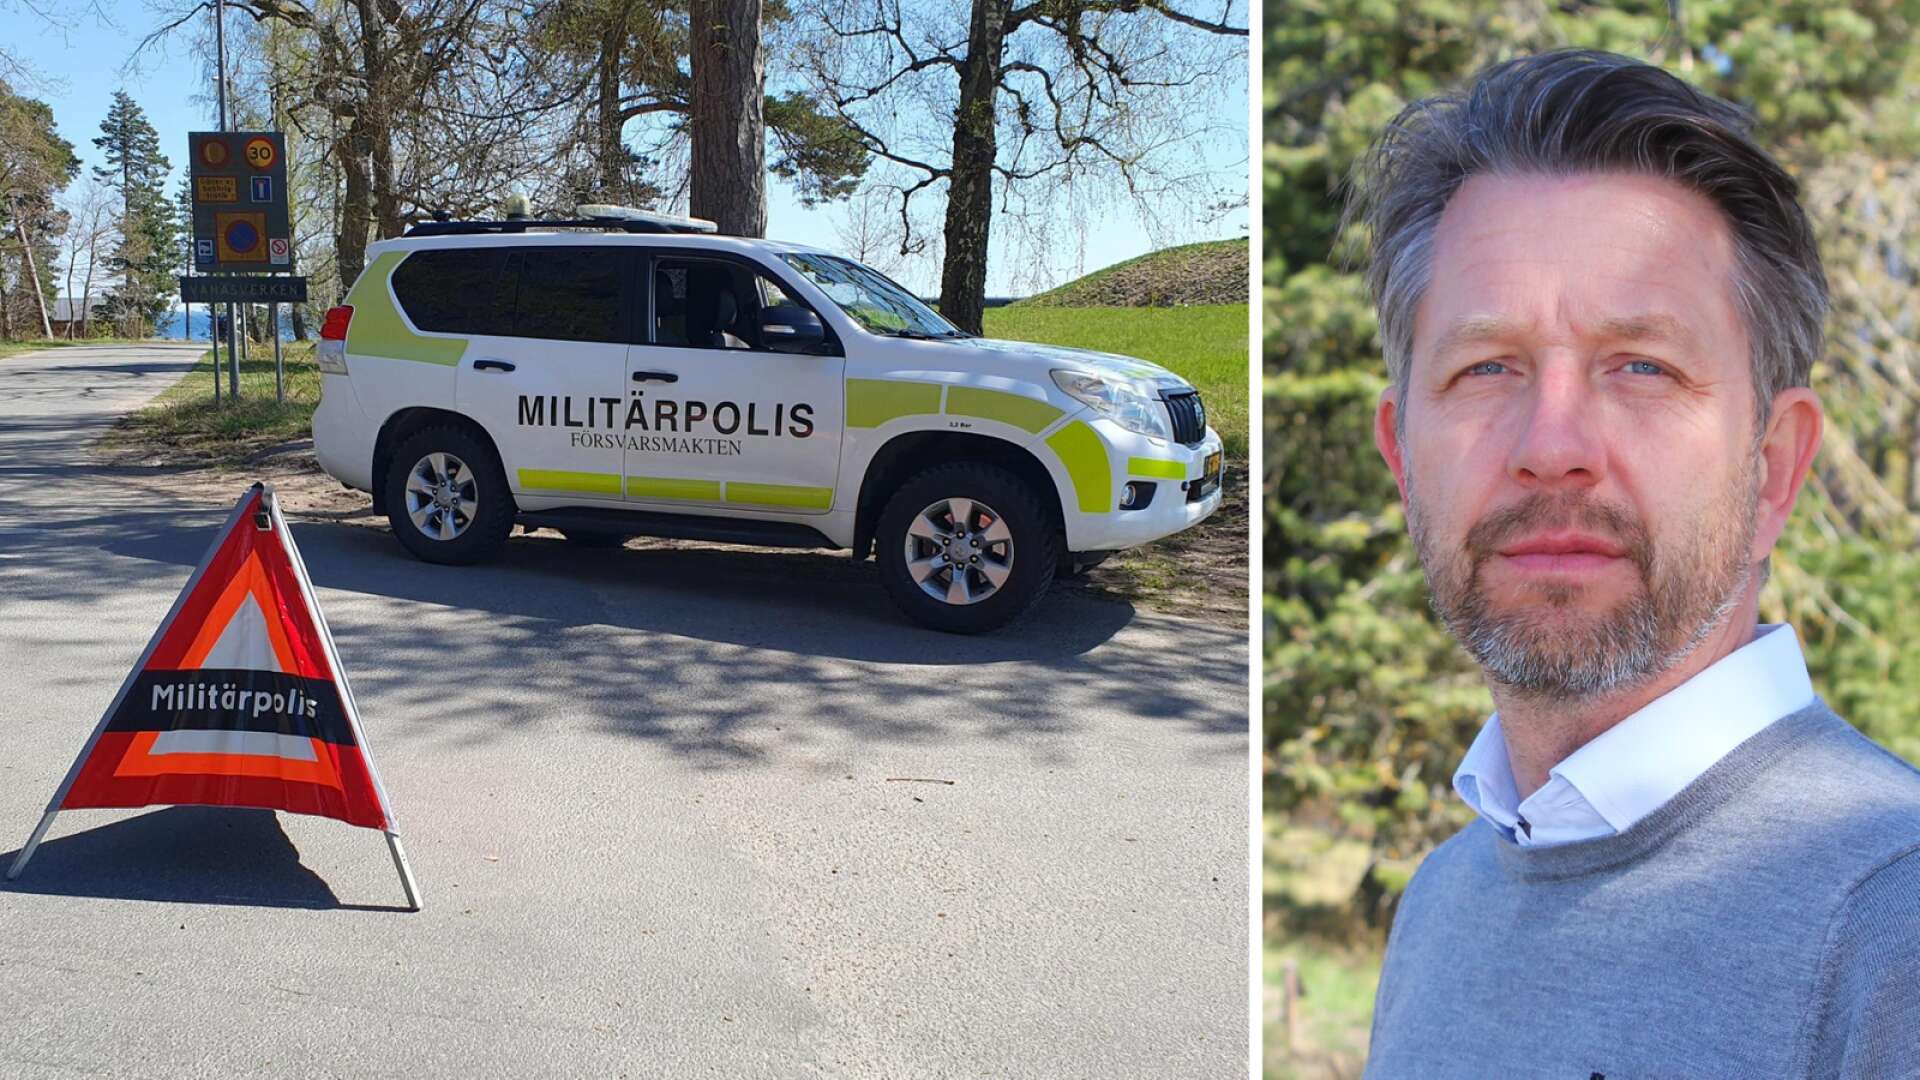 Håkan Führ, vd på Nammo Sverige: ”Vi försöker ta hand om de anställda på alla sätt” • Nu ska flera myndigheter utreda olyckan